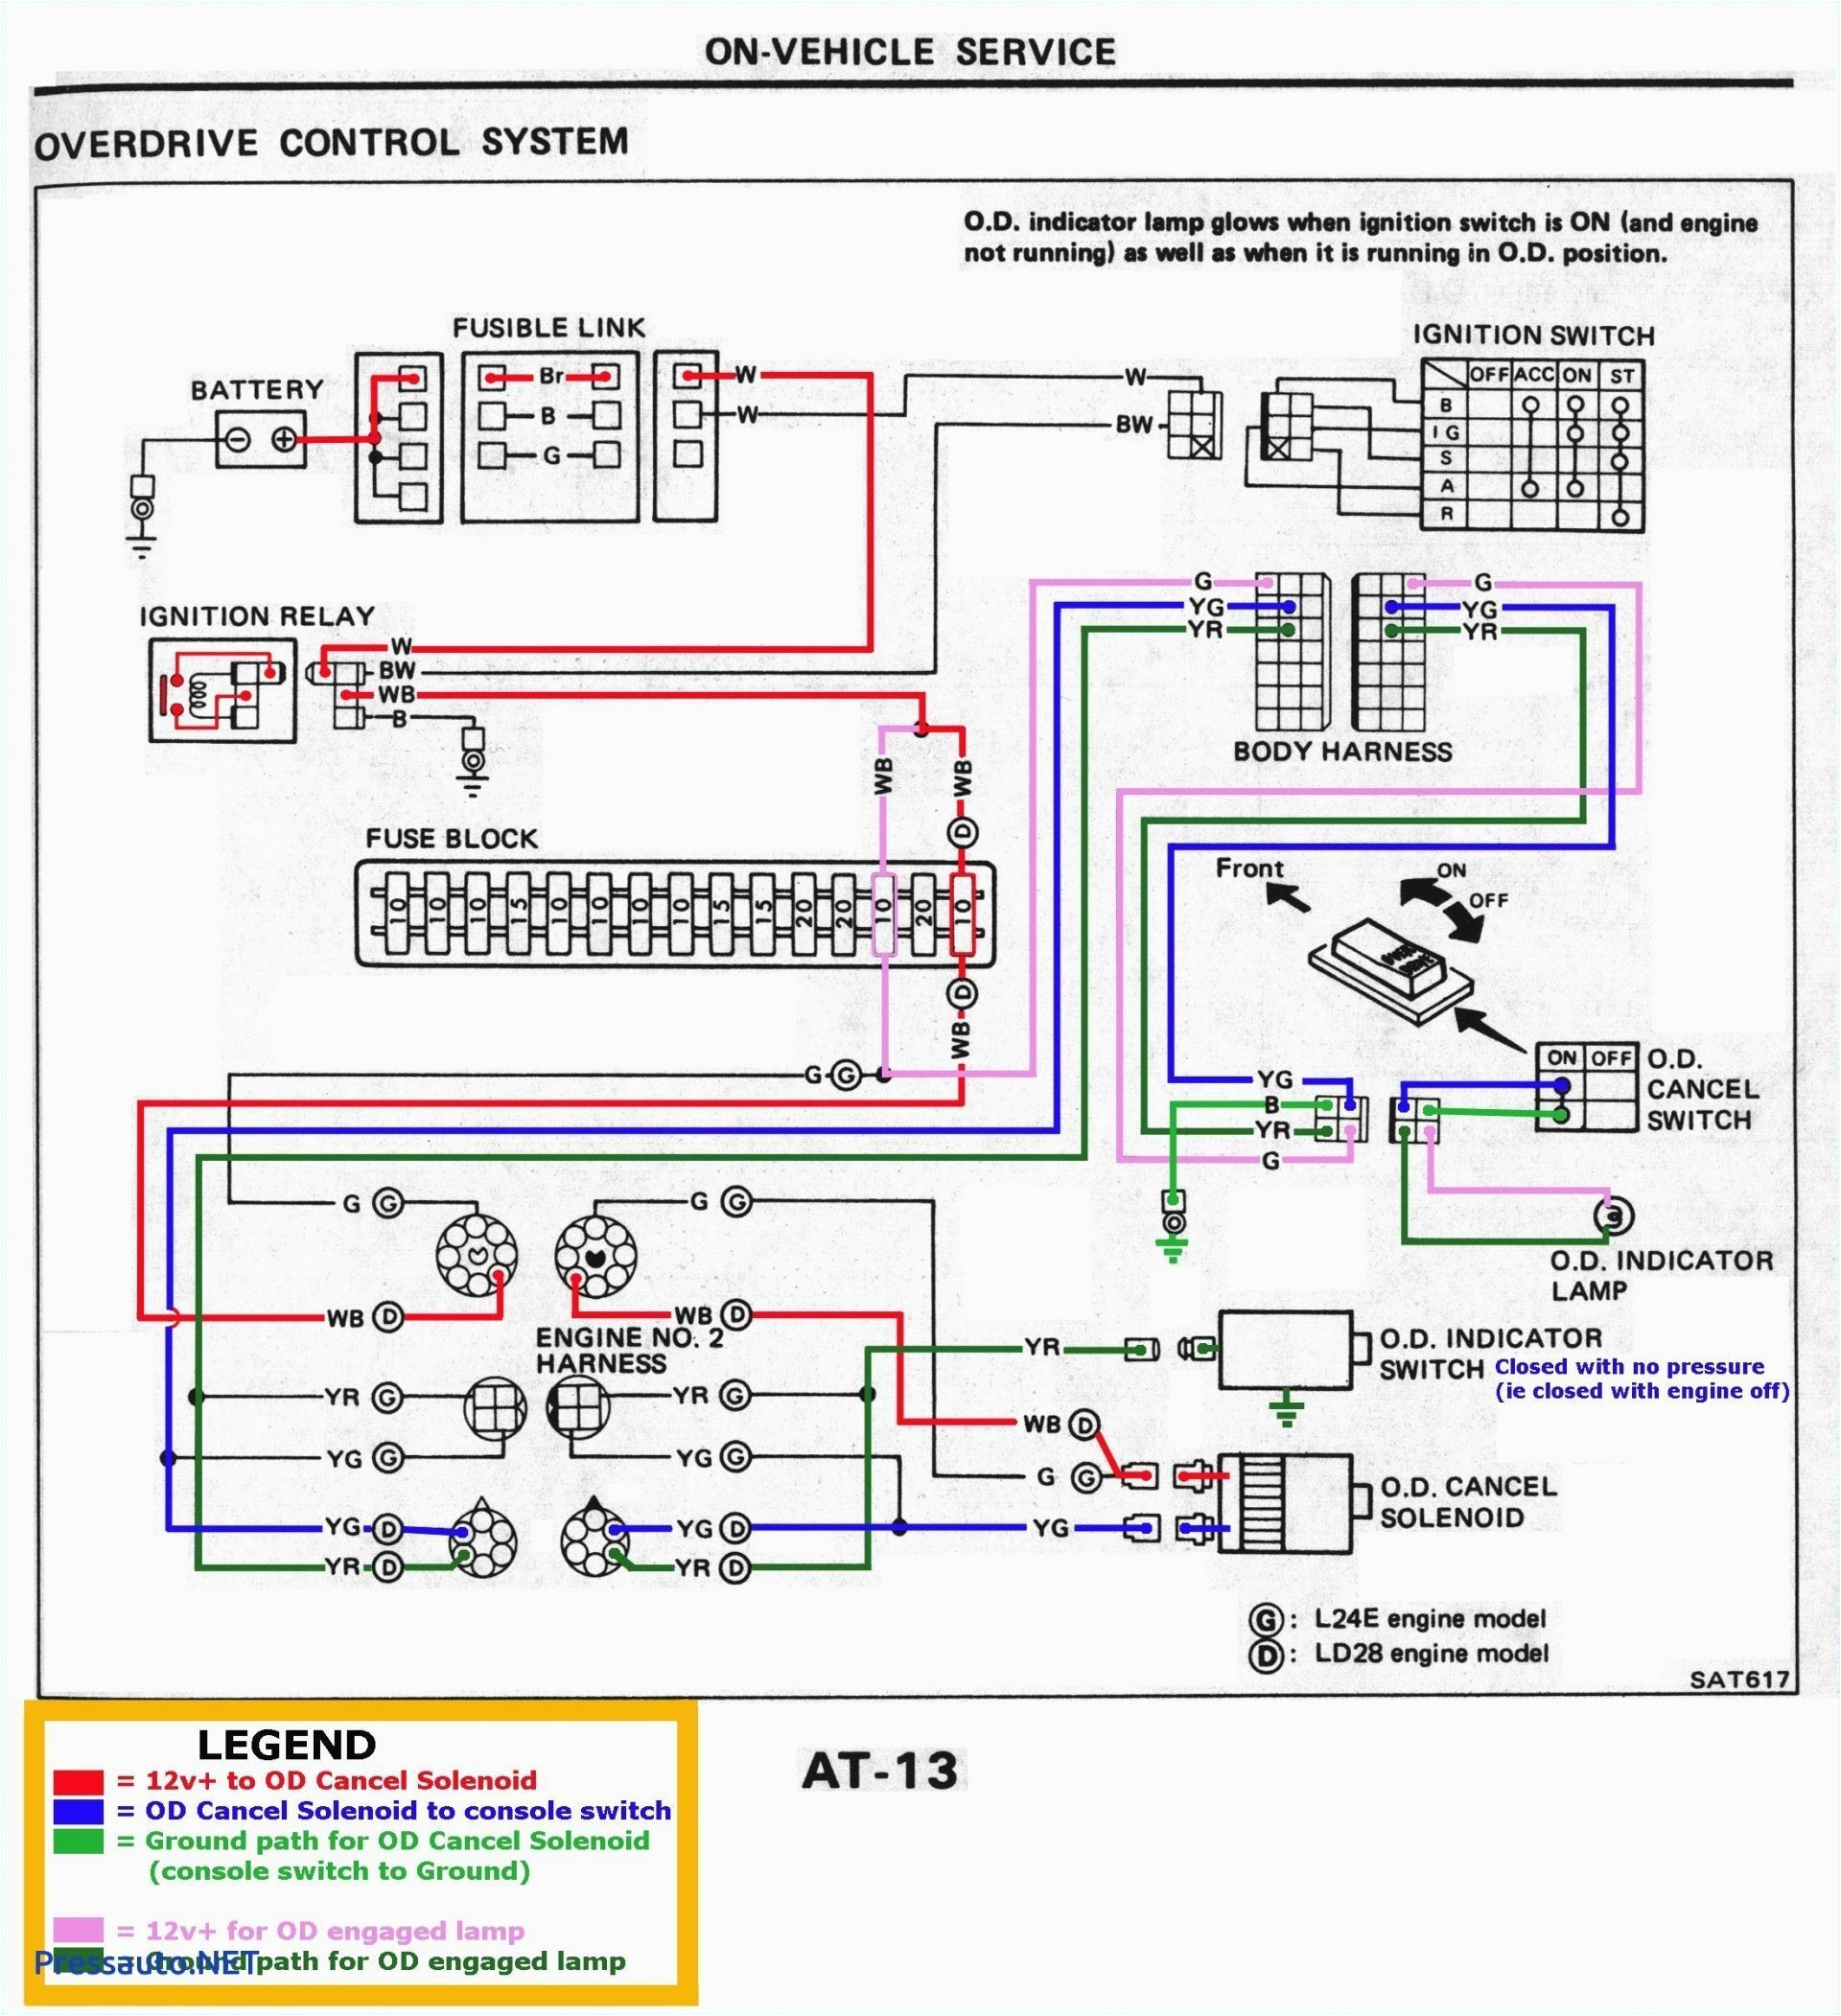 pdf files pinout diagrama ecu mitsubishi lancer 1999 search result wiring diagram for 1999 mitsubishi lancer